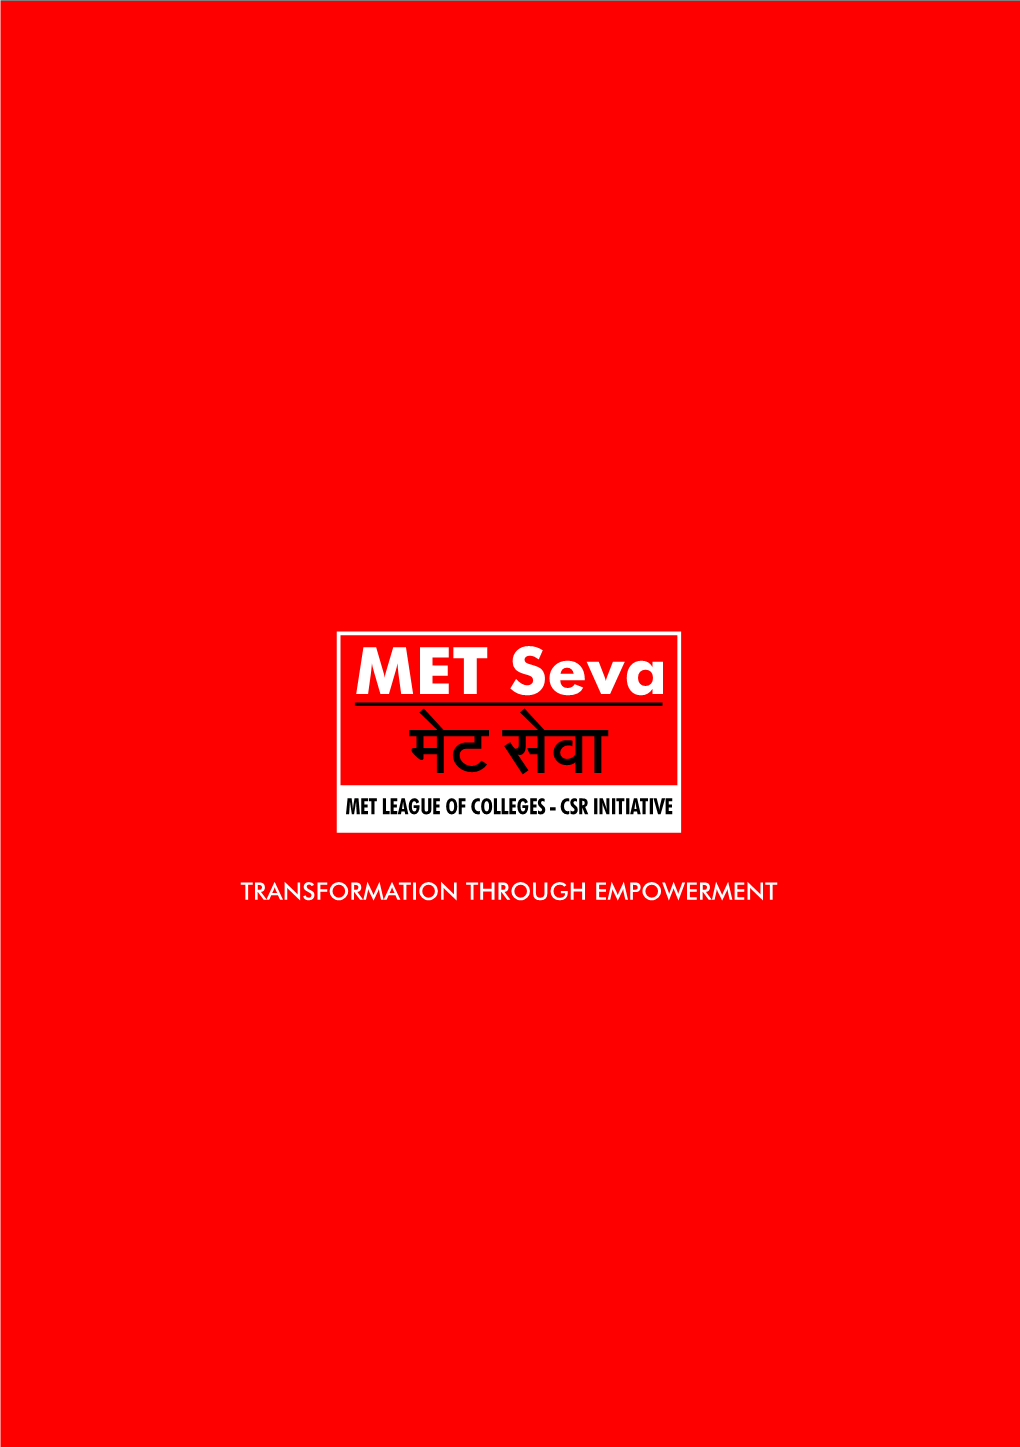 Final MET Seva Flyer 2013 Open